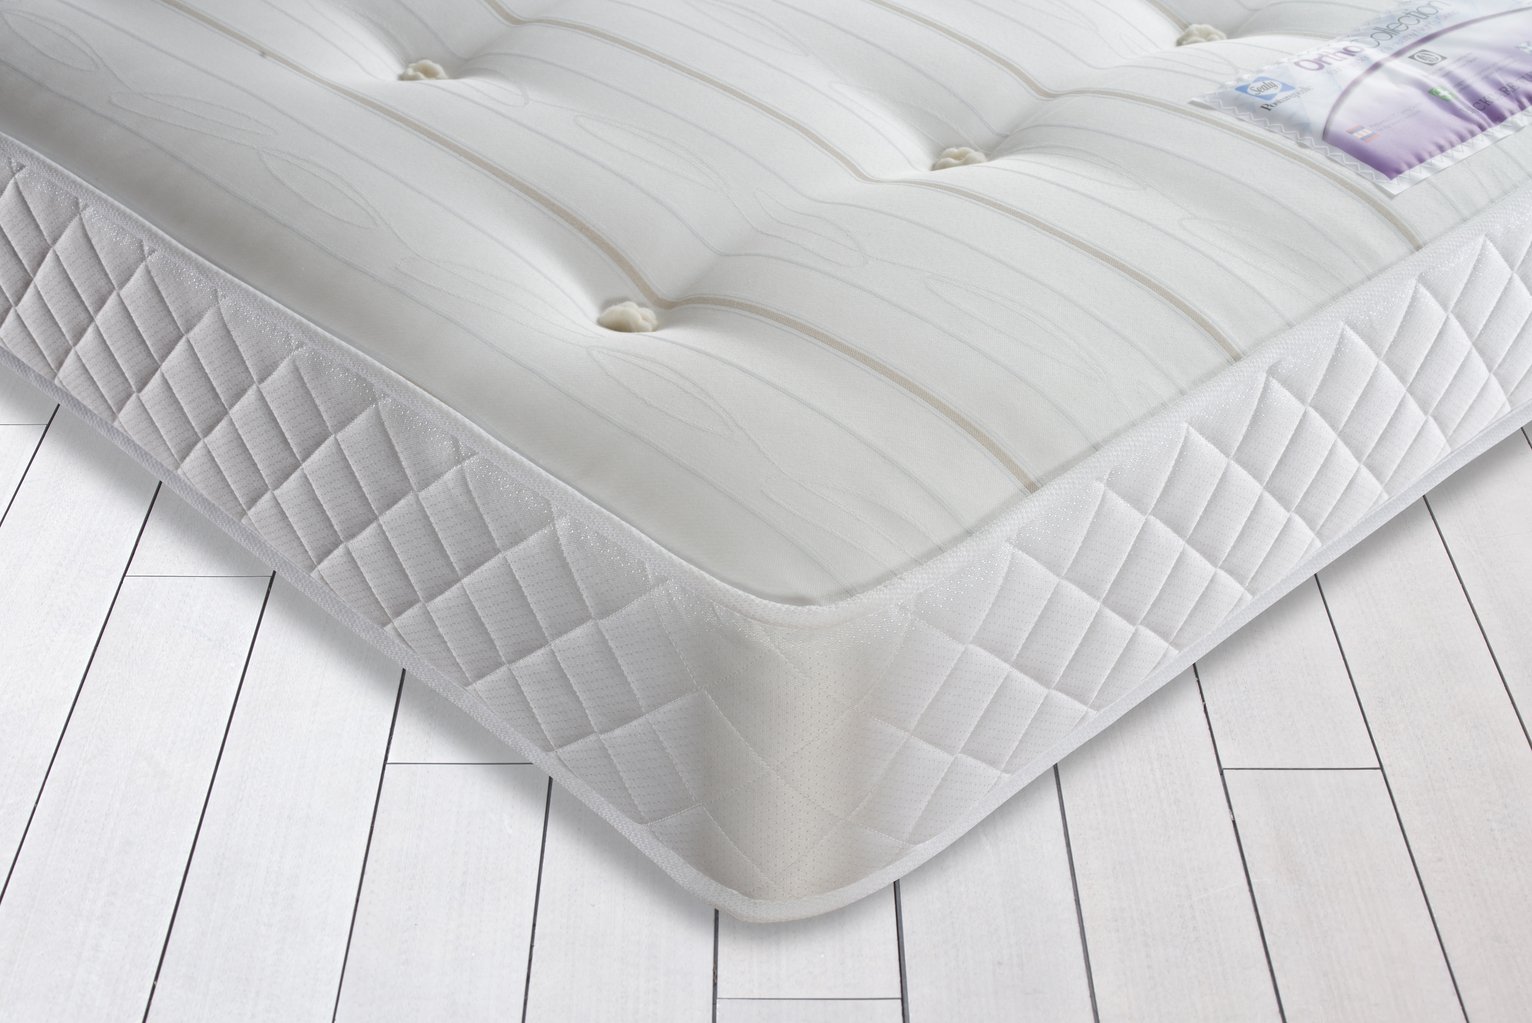 hamarvik sprung mattress medium firm reviews